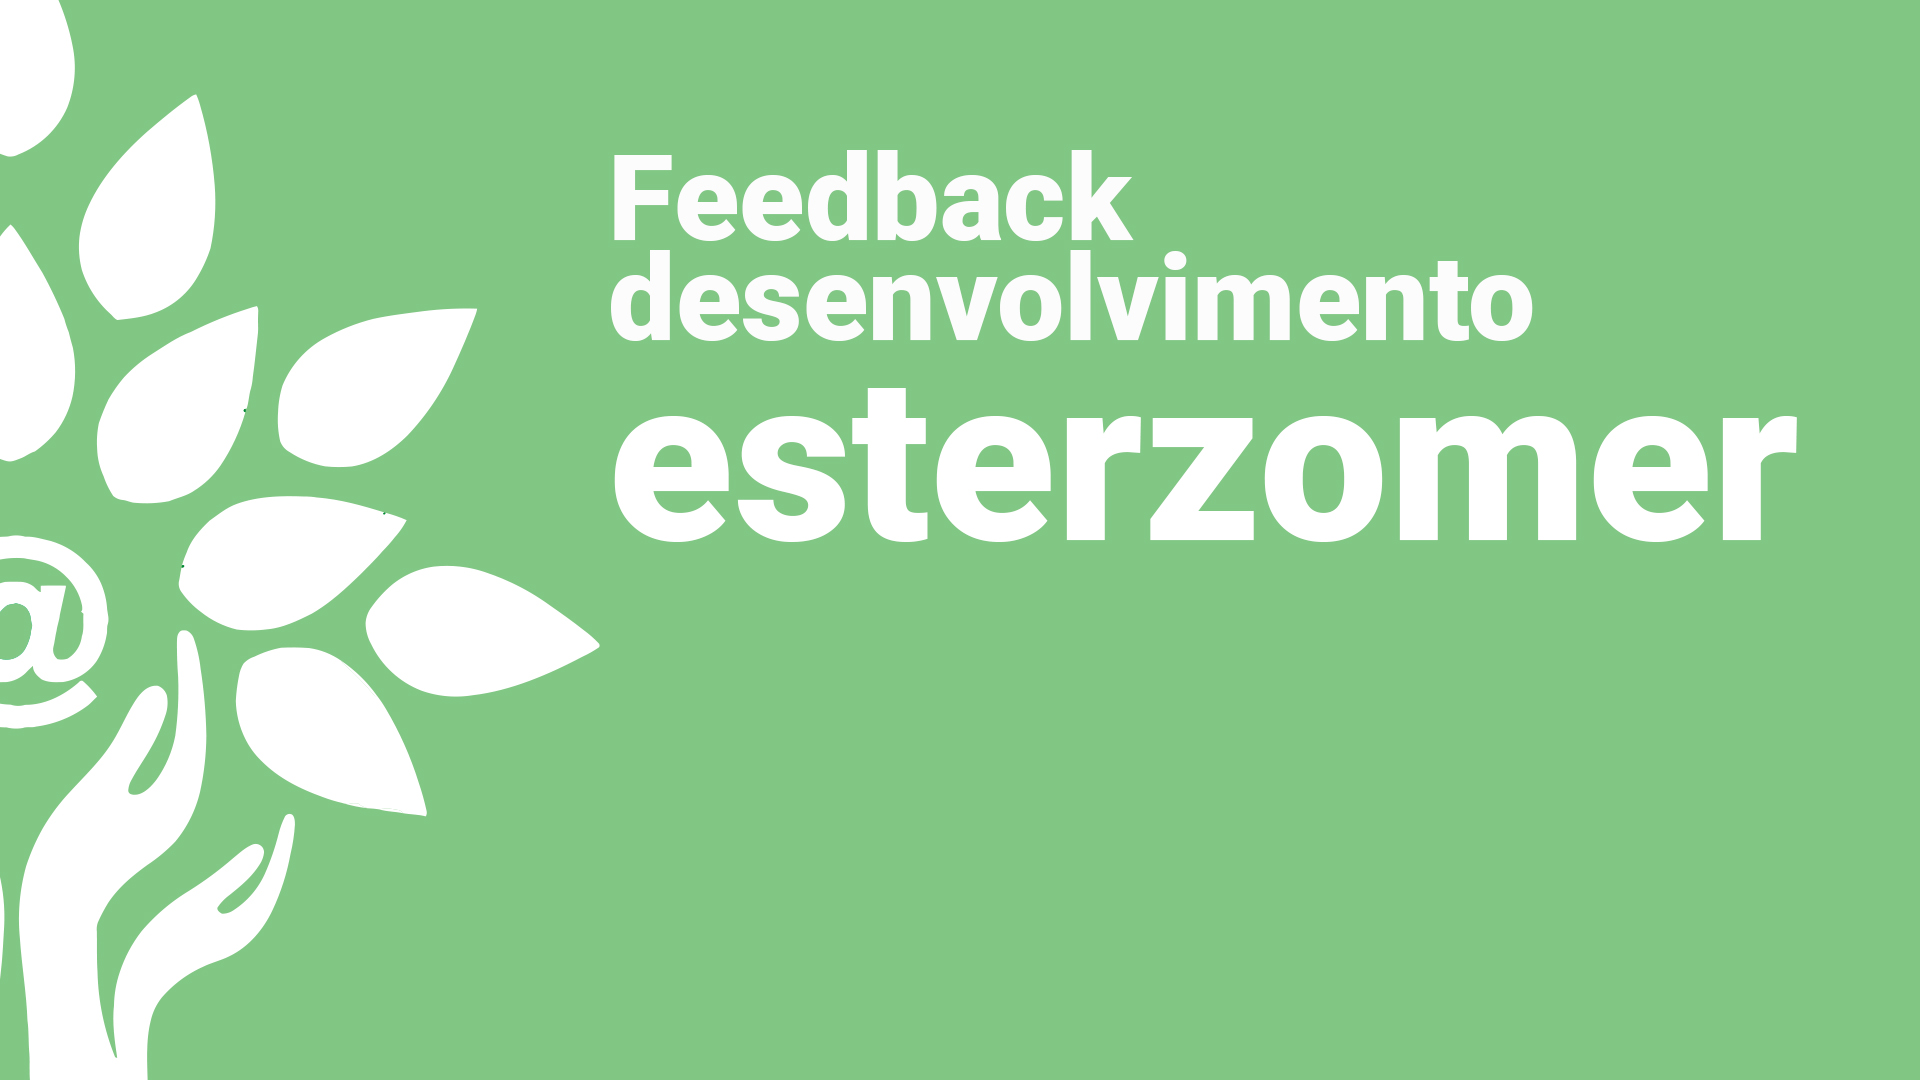 Feedback Desenvolvimento esterzomer.com.br 30 de Janeiro